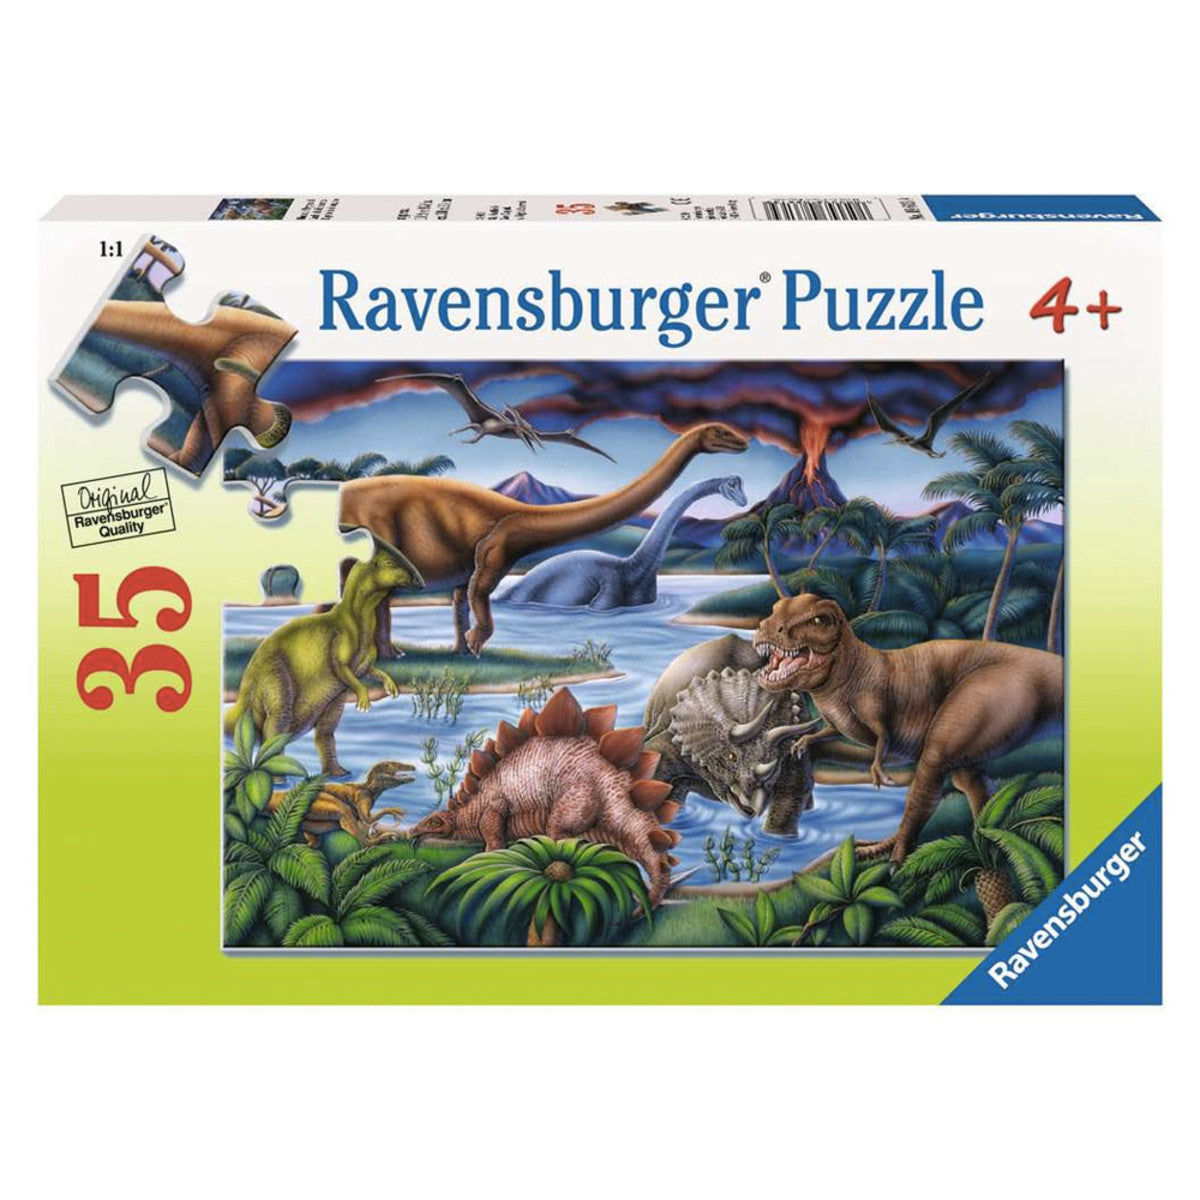 Dinosaur Playground 35pc Puzzle